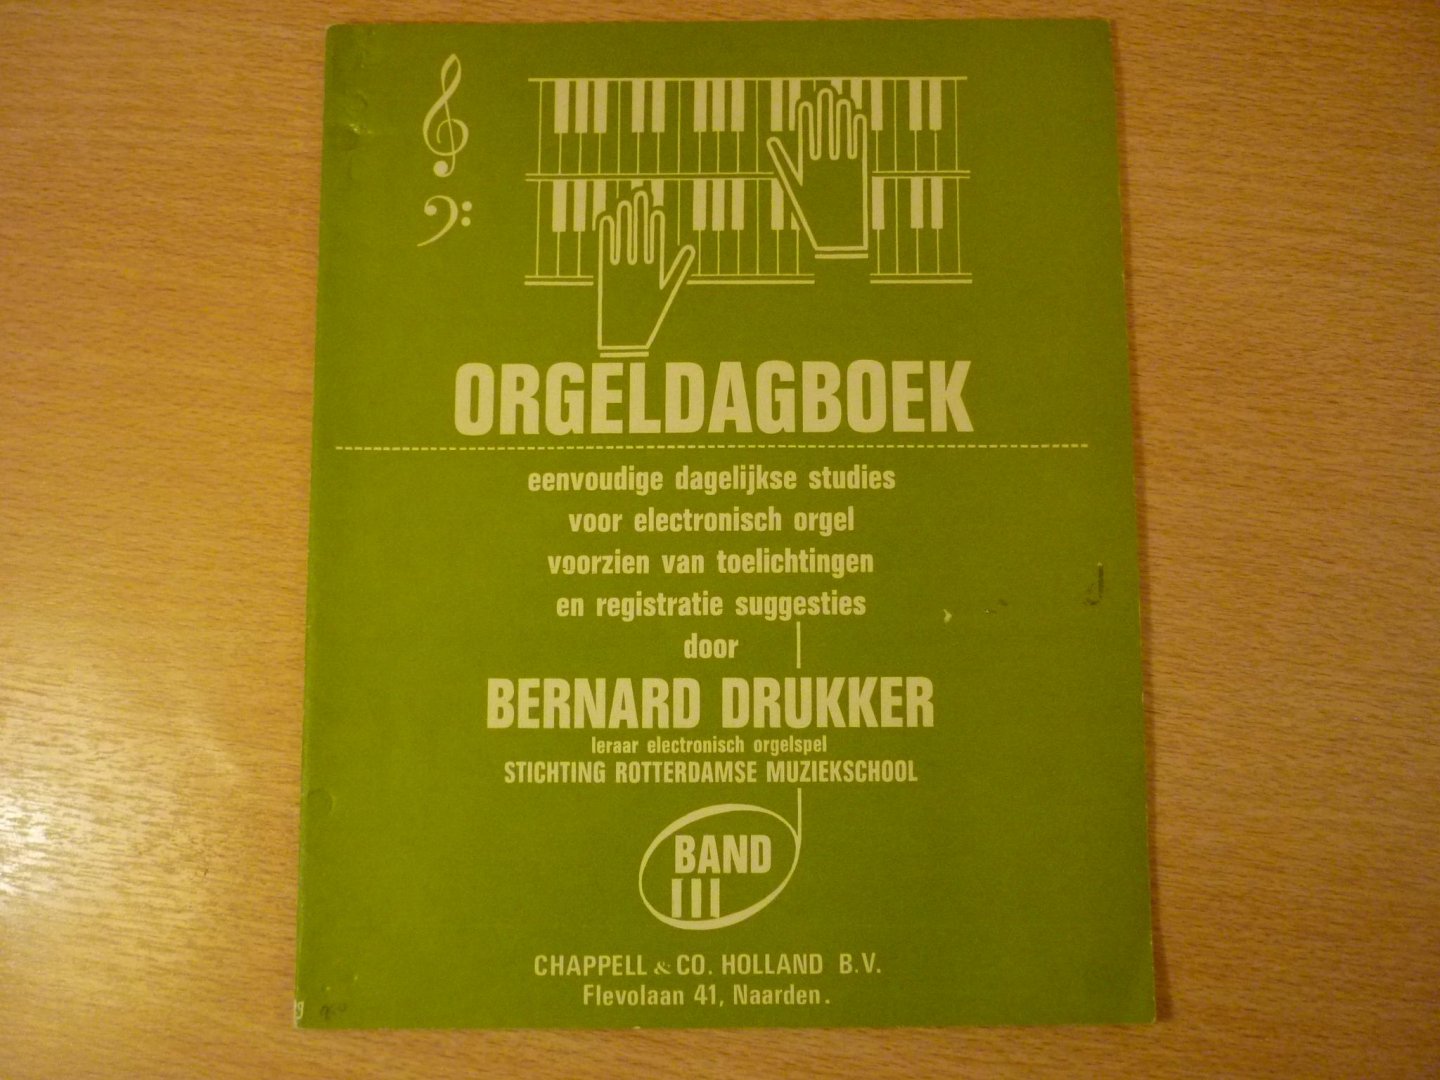 Drukker; Bernard - Orgeldagboek; eenvoudige dagelijkse studies voor orgel; voorzien van toelichtingen en registratie suggesties